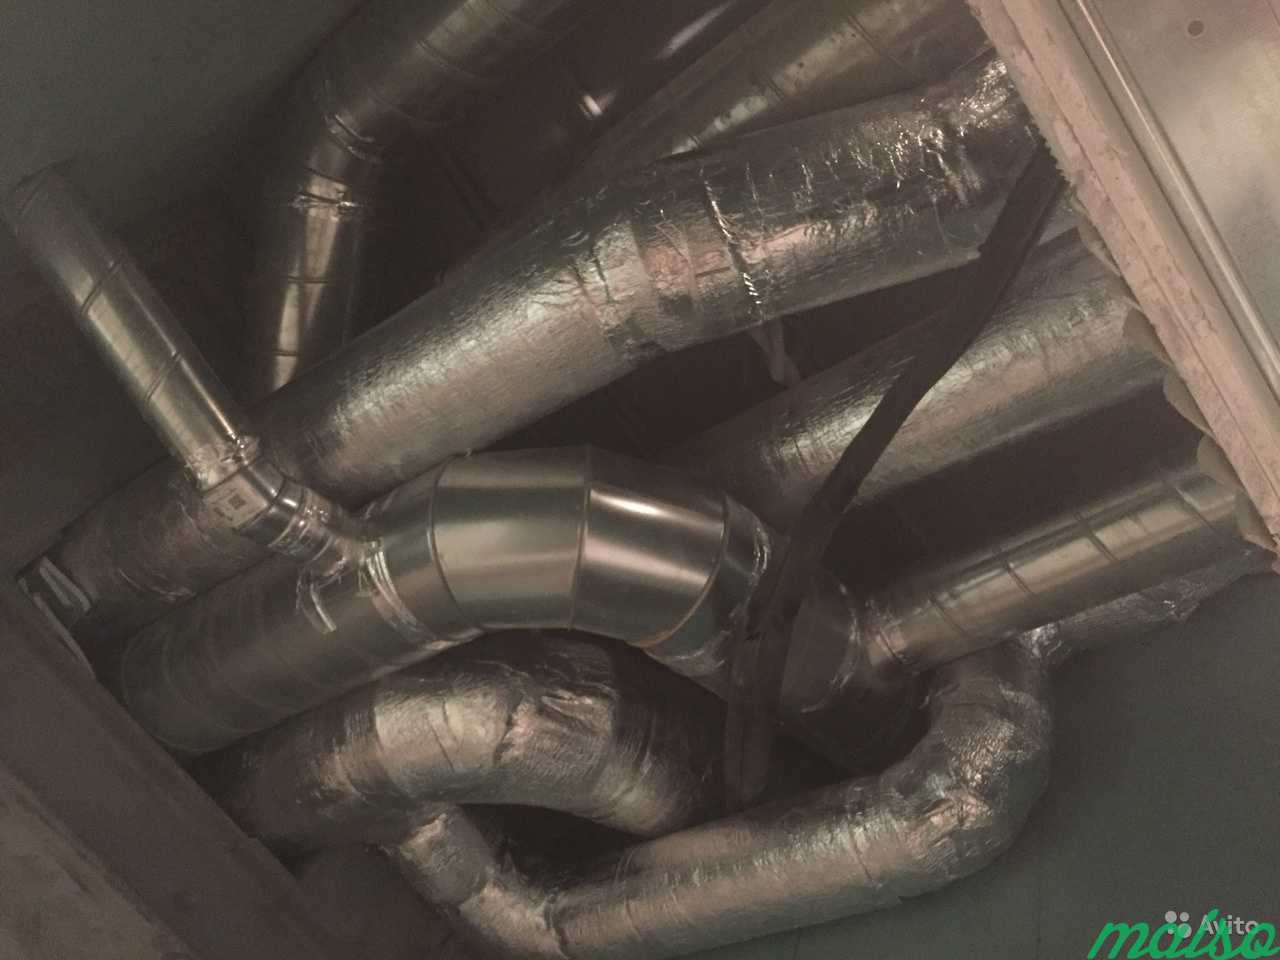 Монтаж вентиляционных систем в Москве. Фото 1